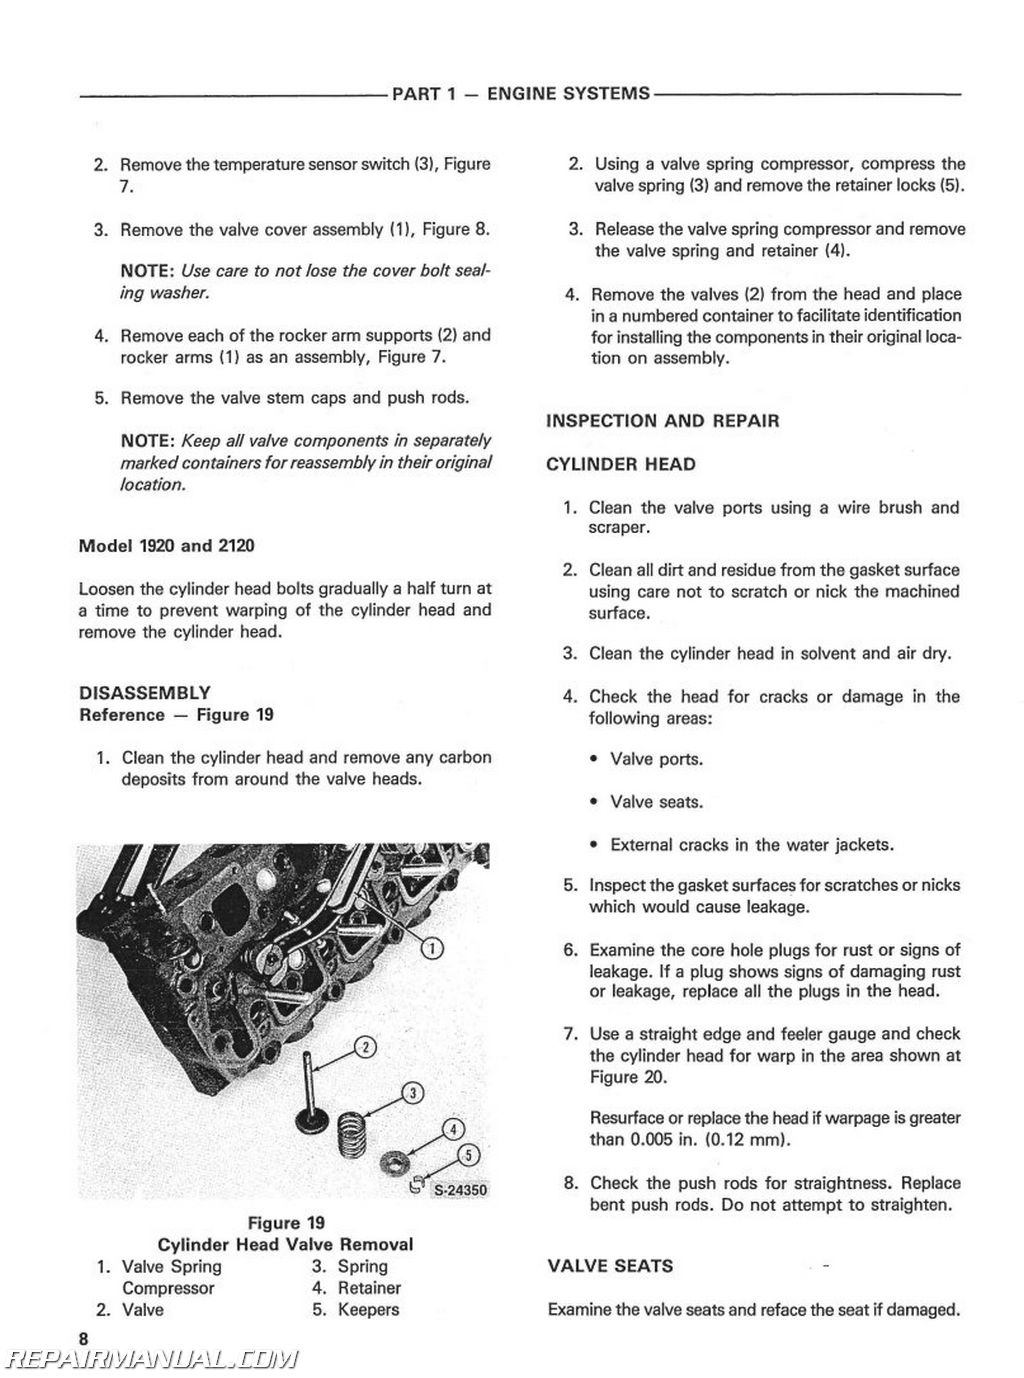 Ford 1920 parts manual #8